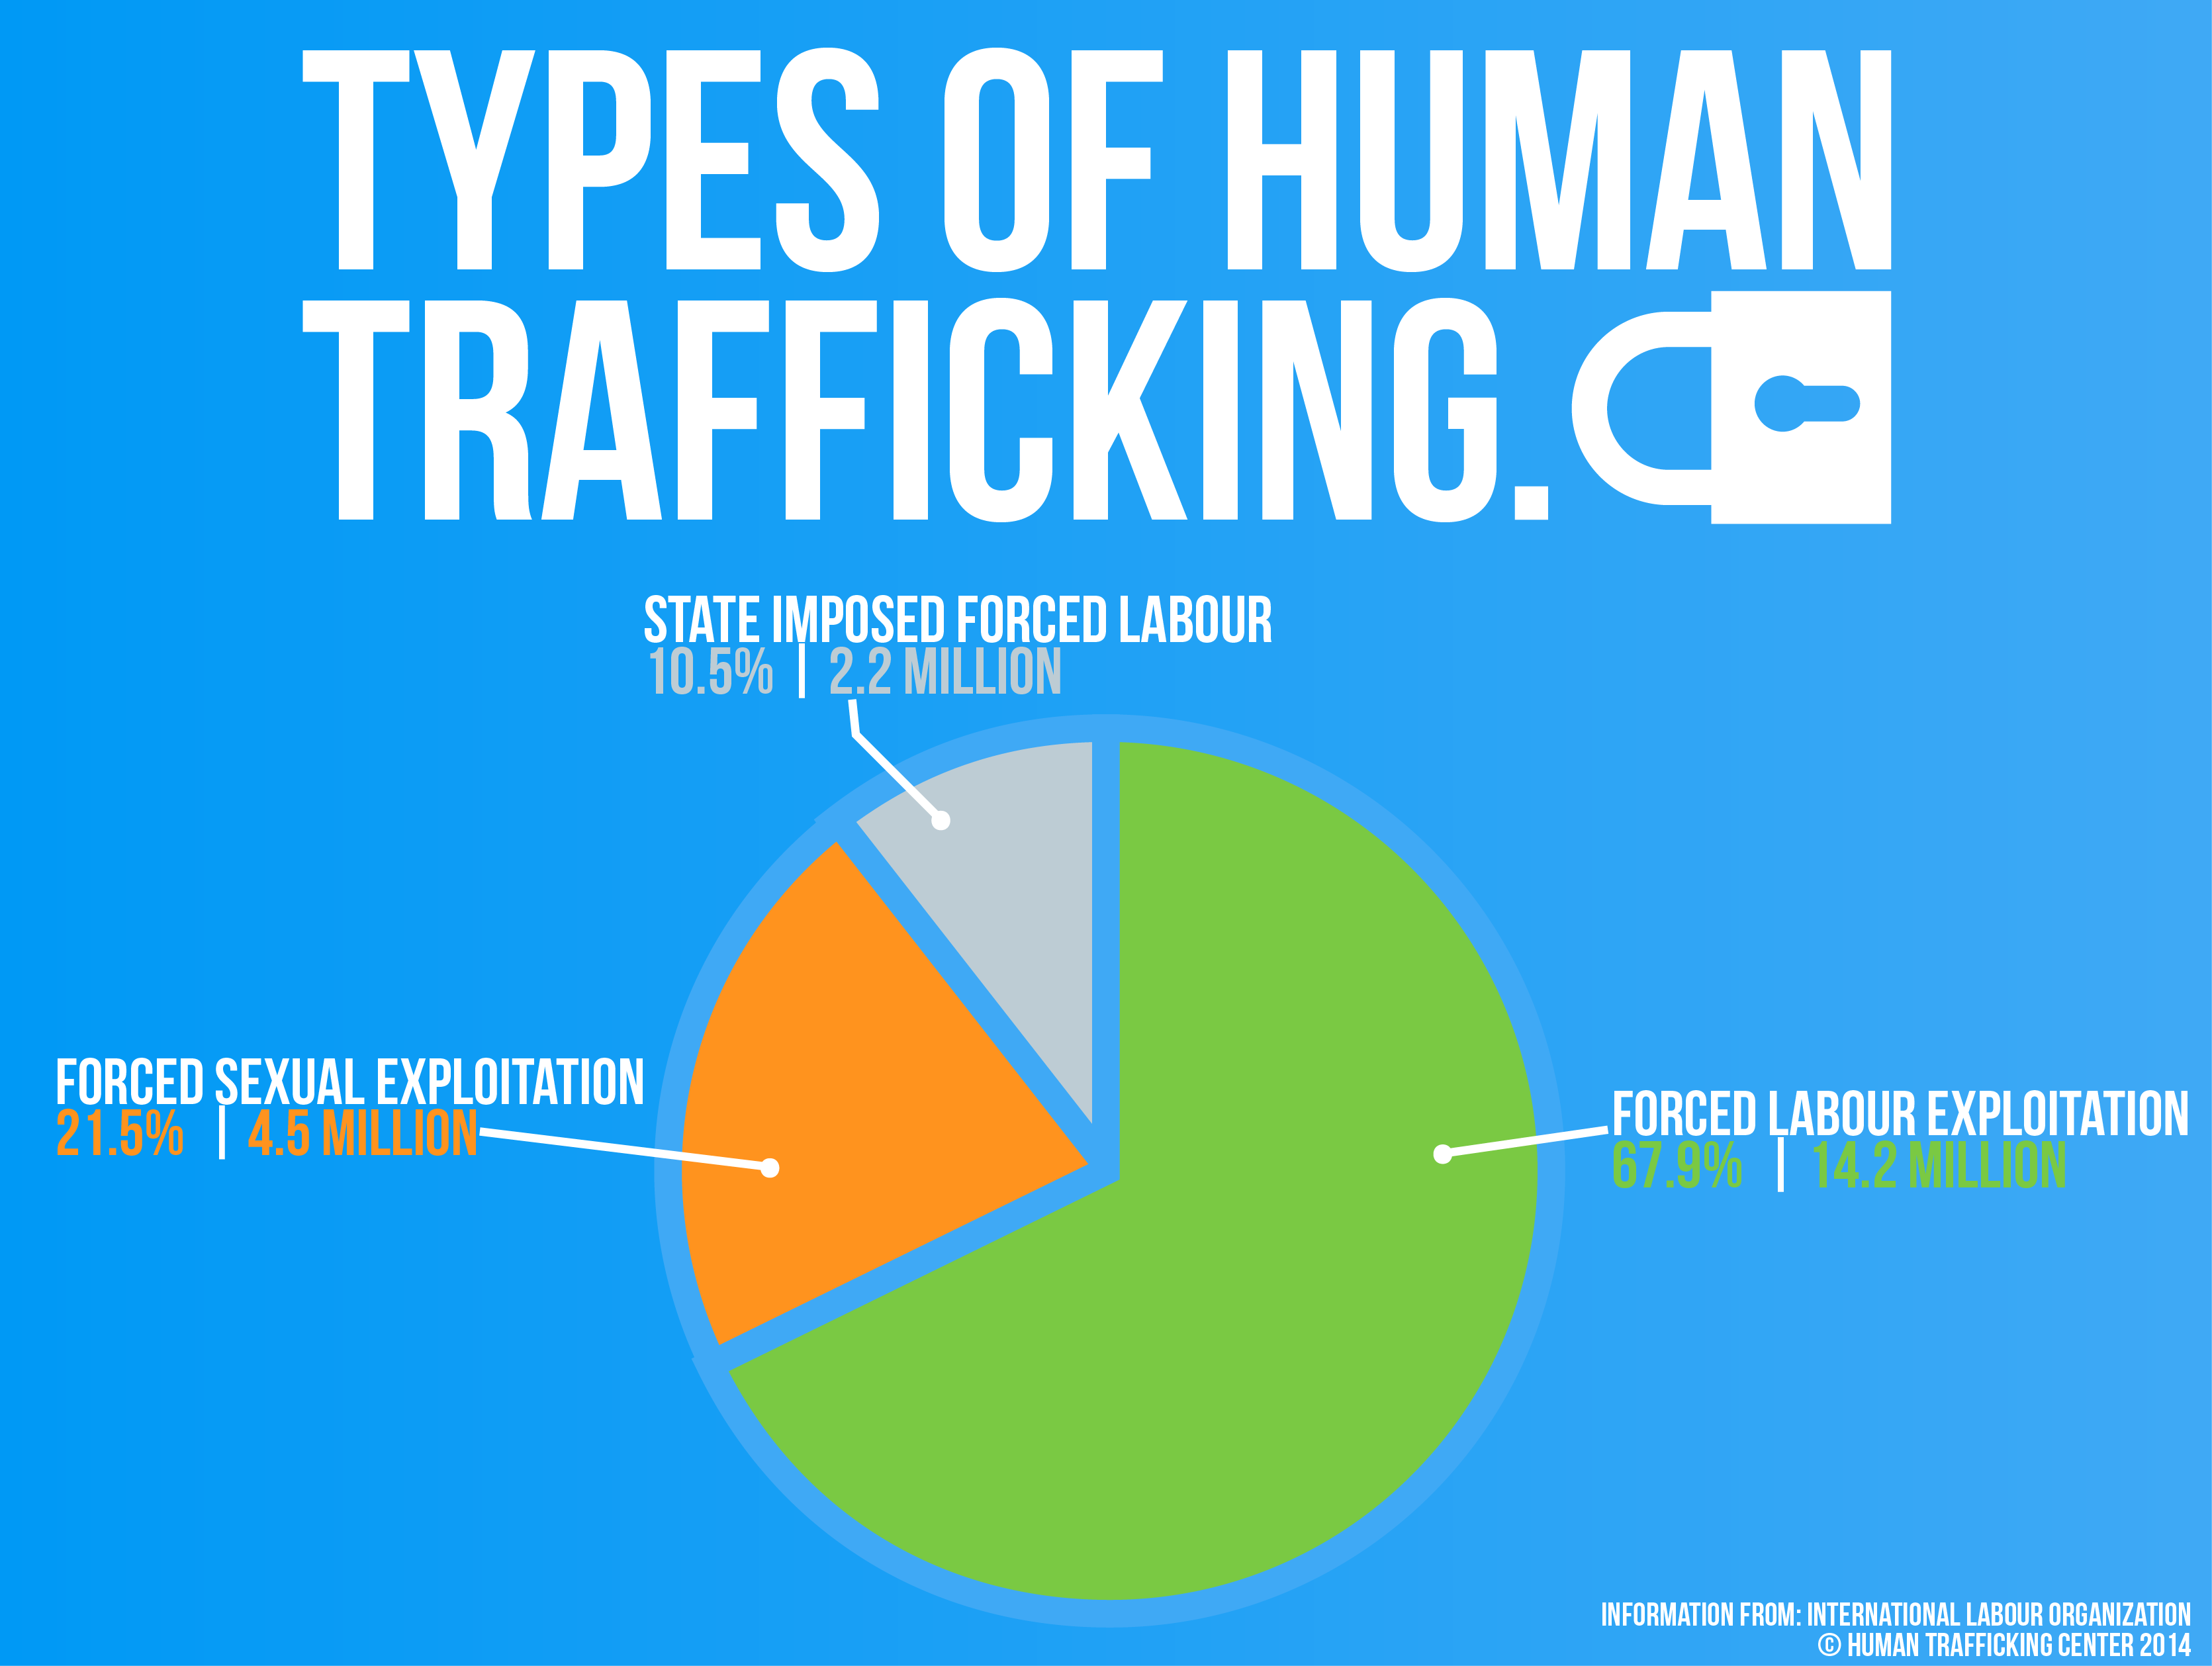 5 Ways To Reduce Human Trafficking Ecospirituality Resources